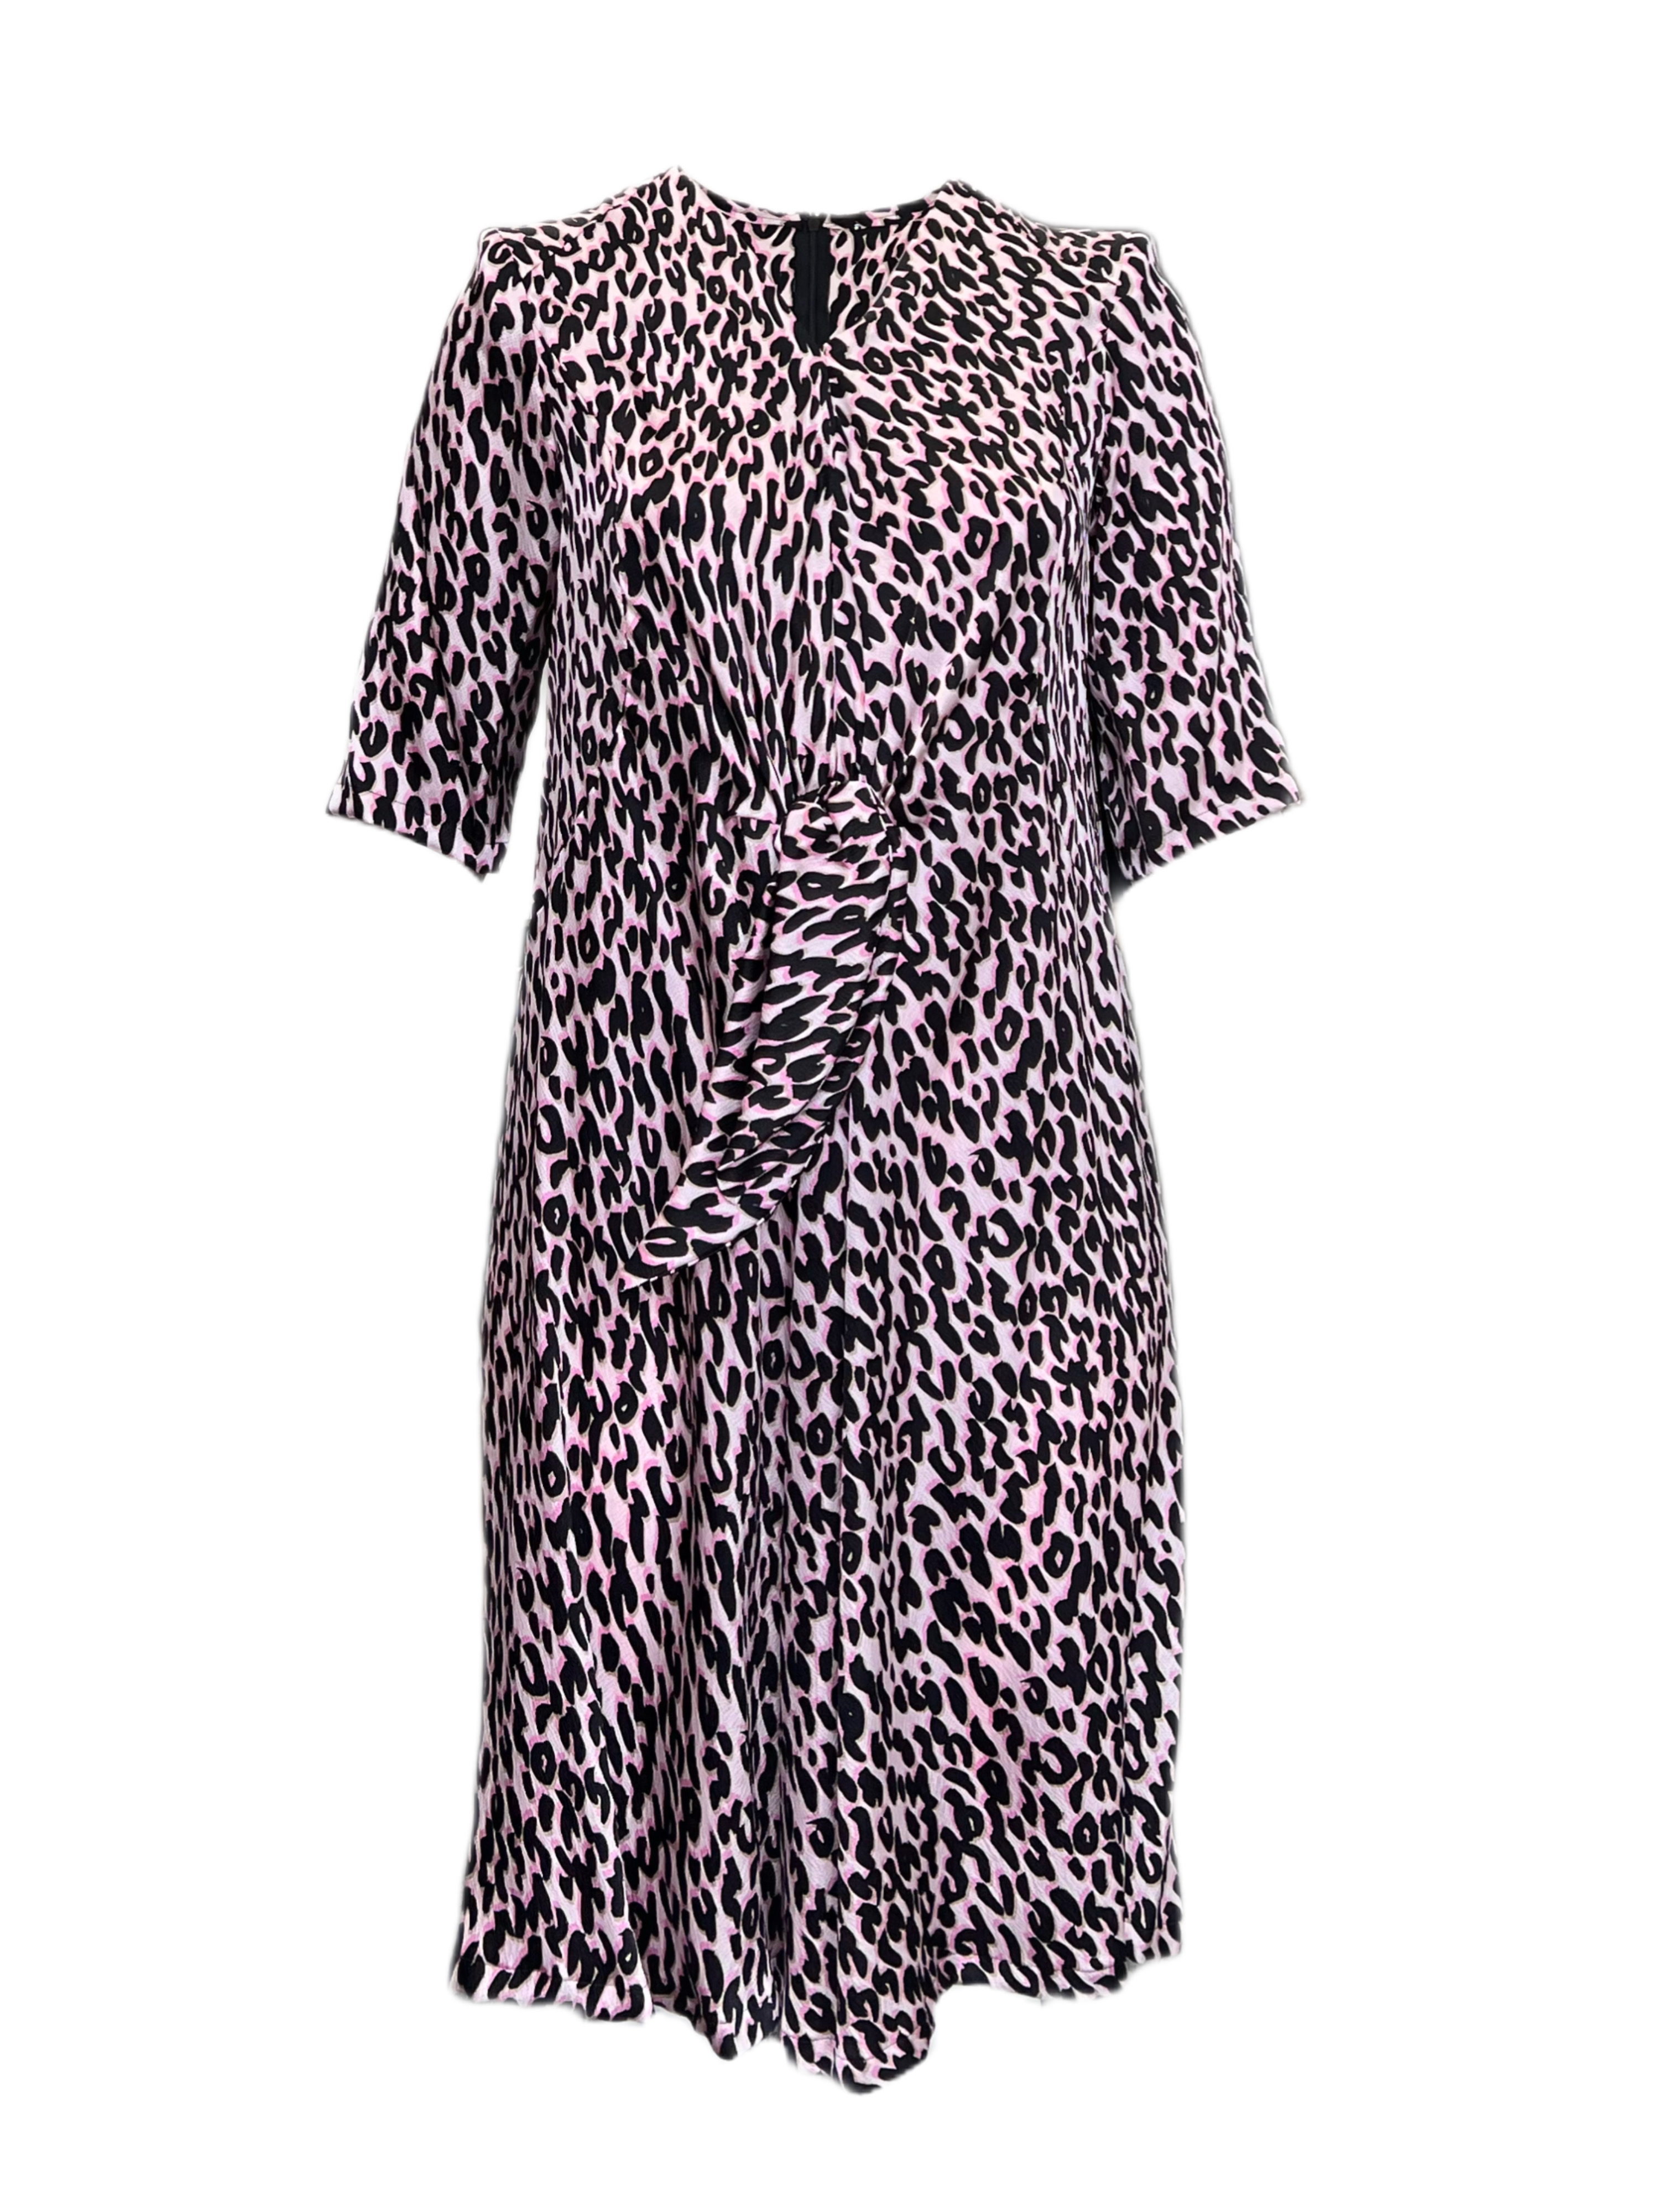 MARINA RINALDI by MaxMara Nixon Pink Animal Print V-Neck Dress | eBay | Sportkleider